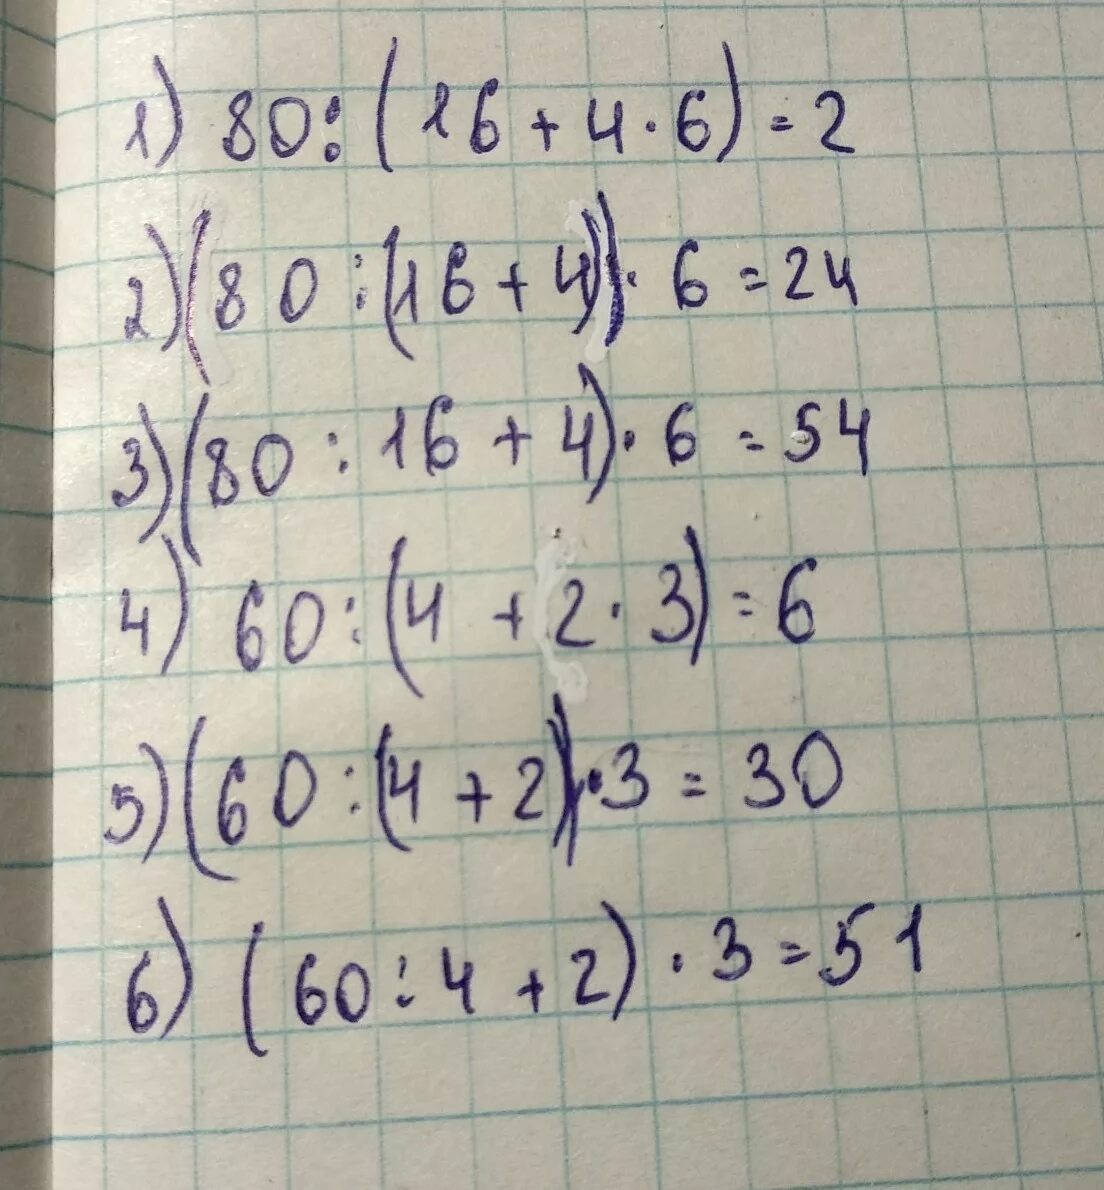 1 1 15 5 16 решение. 80 16 Решение. 80:B=16 решение. 80-16:4+6•2:1 Решение. 80 16 3 Класс.